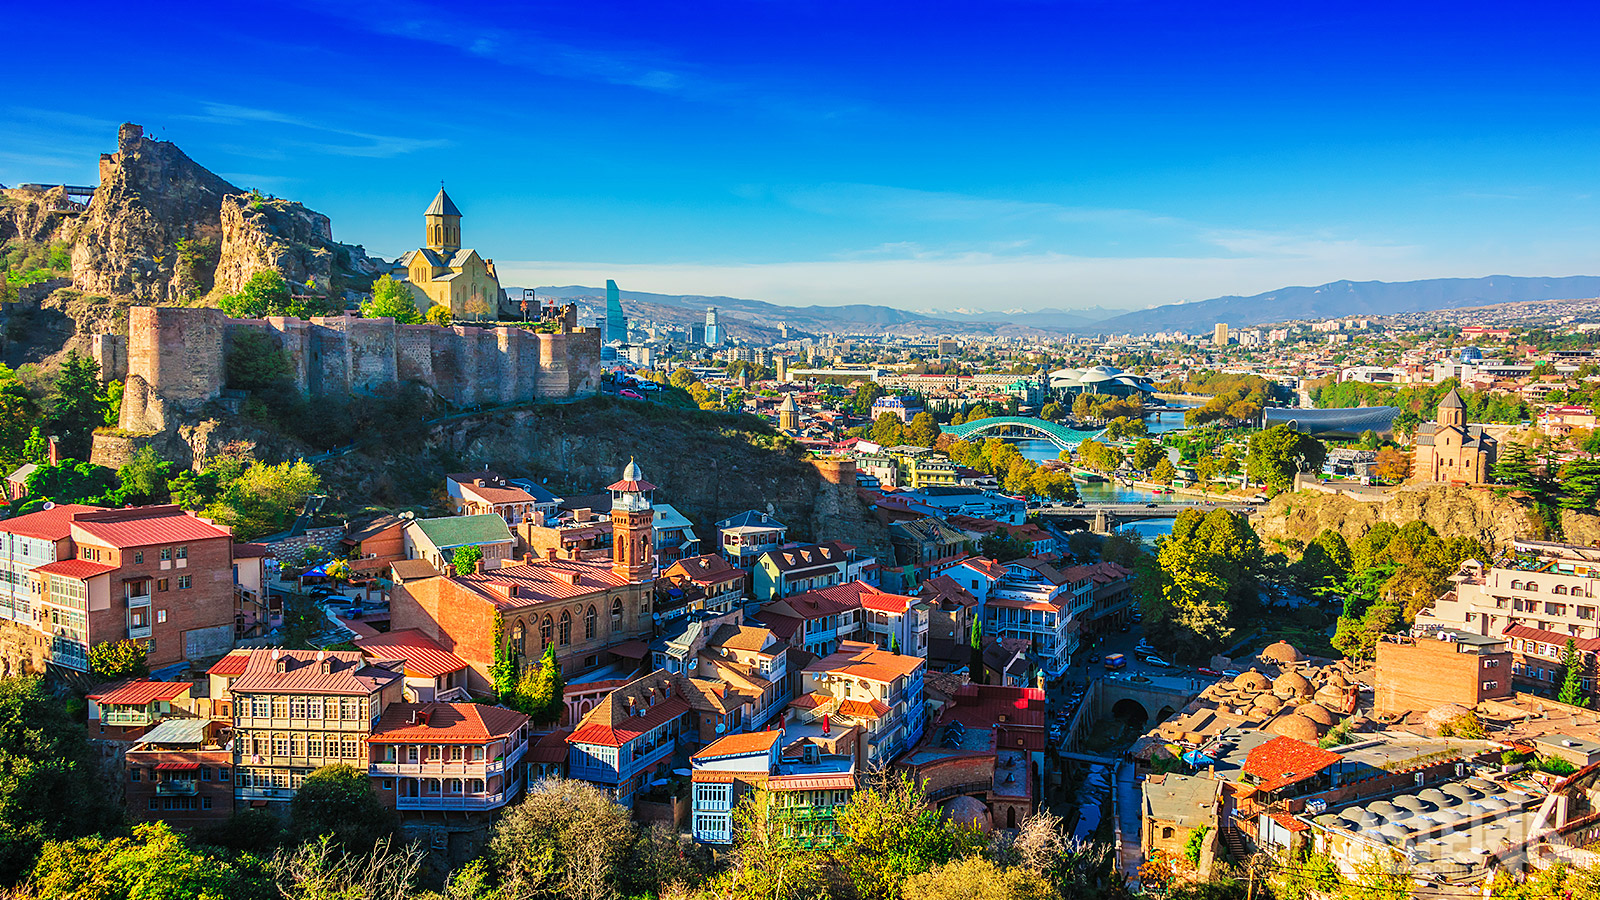 De Georgische hoofdstad Tbilisi wordt gekenmerkt door felgekleurde torens, kleine straatjes, een bloeiende kunstscene en talrijke restaurantjes